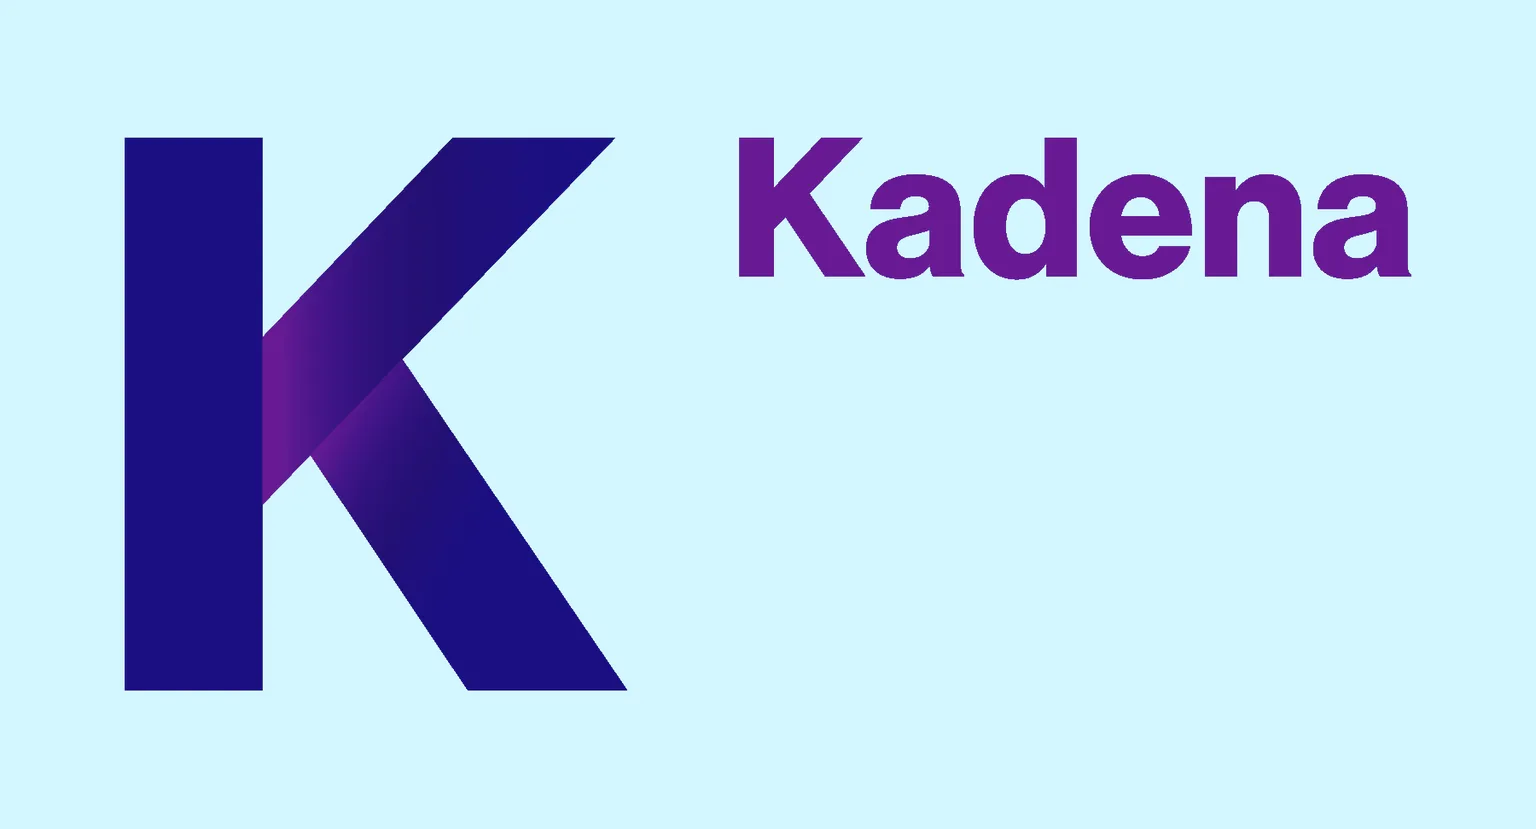 Logo de Kadena, la blockchain de JP Morgan. Imagen: Kadena.io